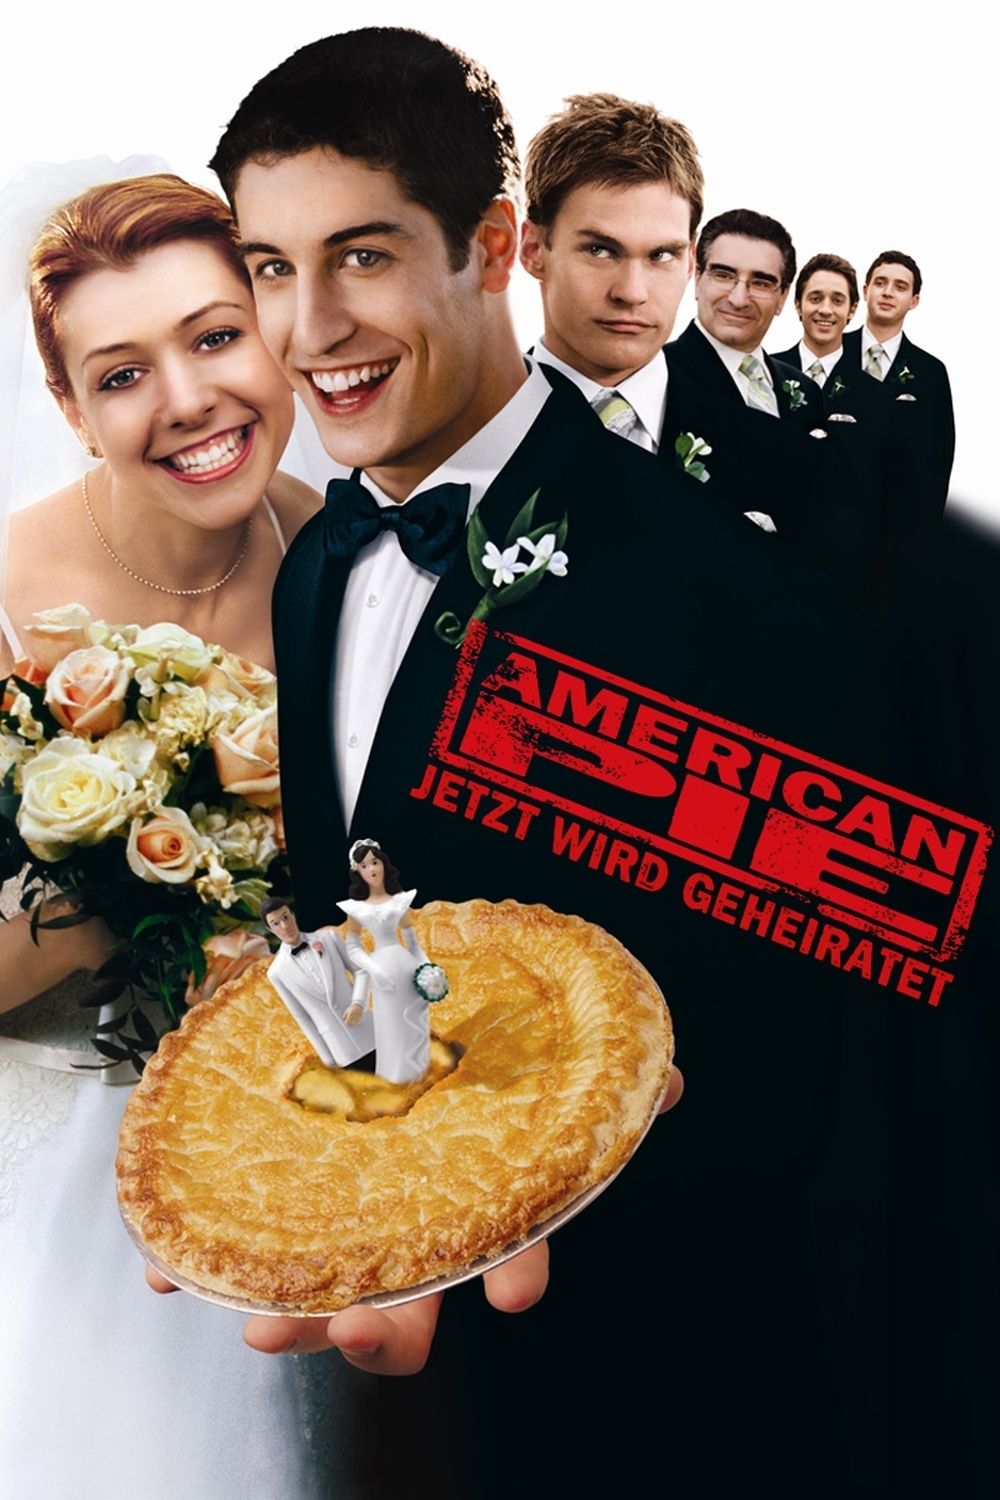 Plakat von "American Pie - Jetzt wird geheiratet"